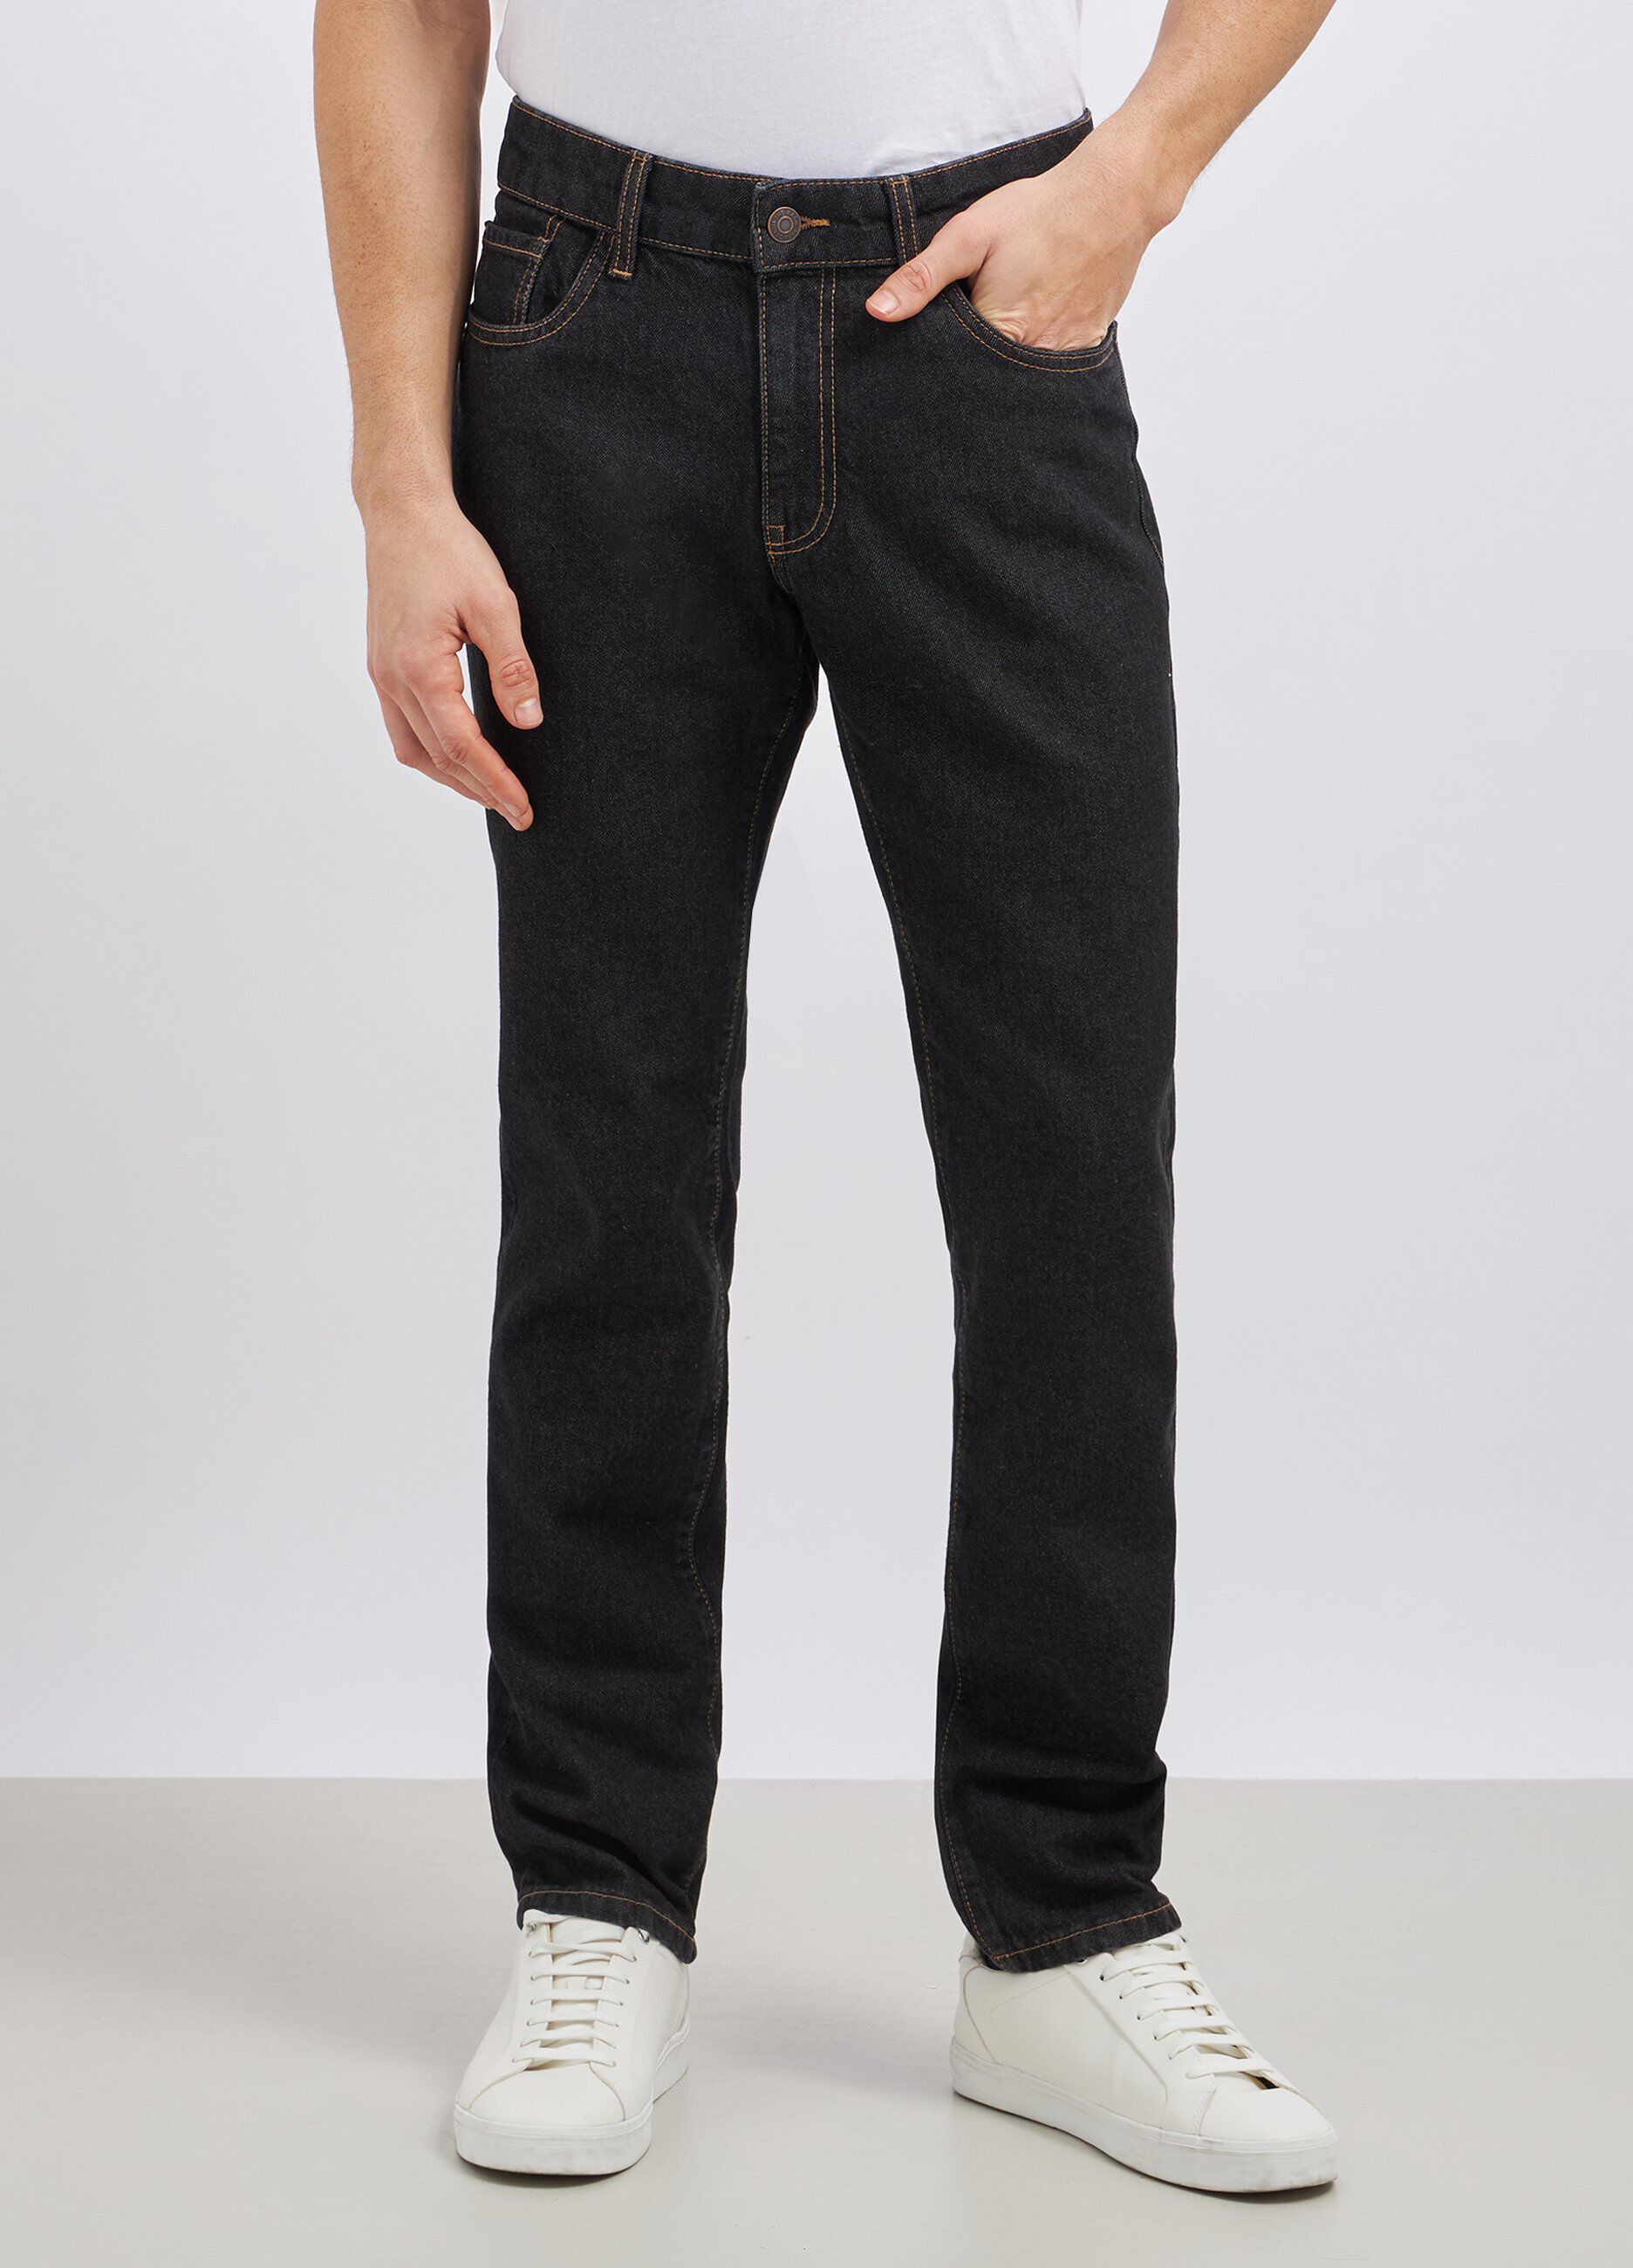 Jeans modello 5 tasche in puro cotone uomo_1